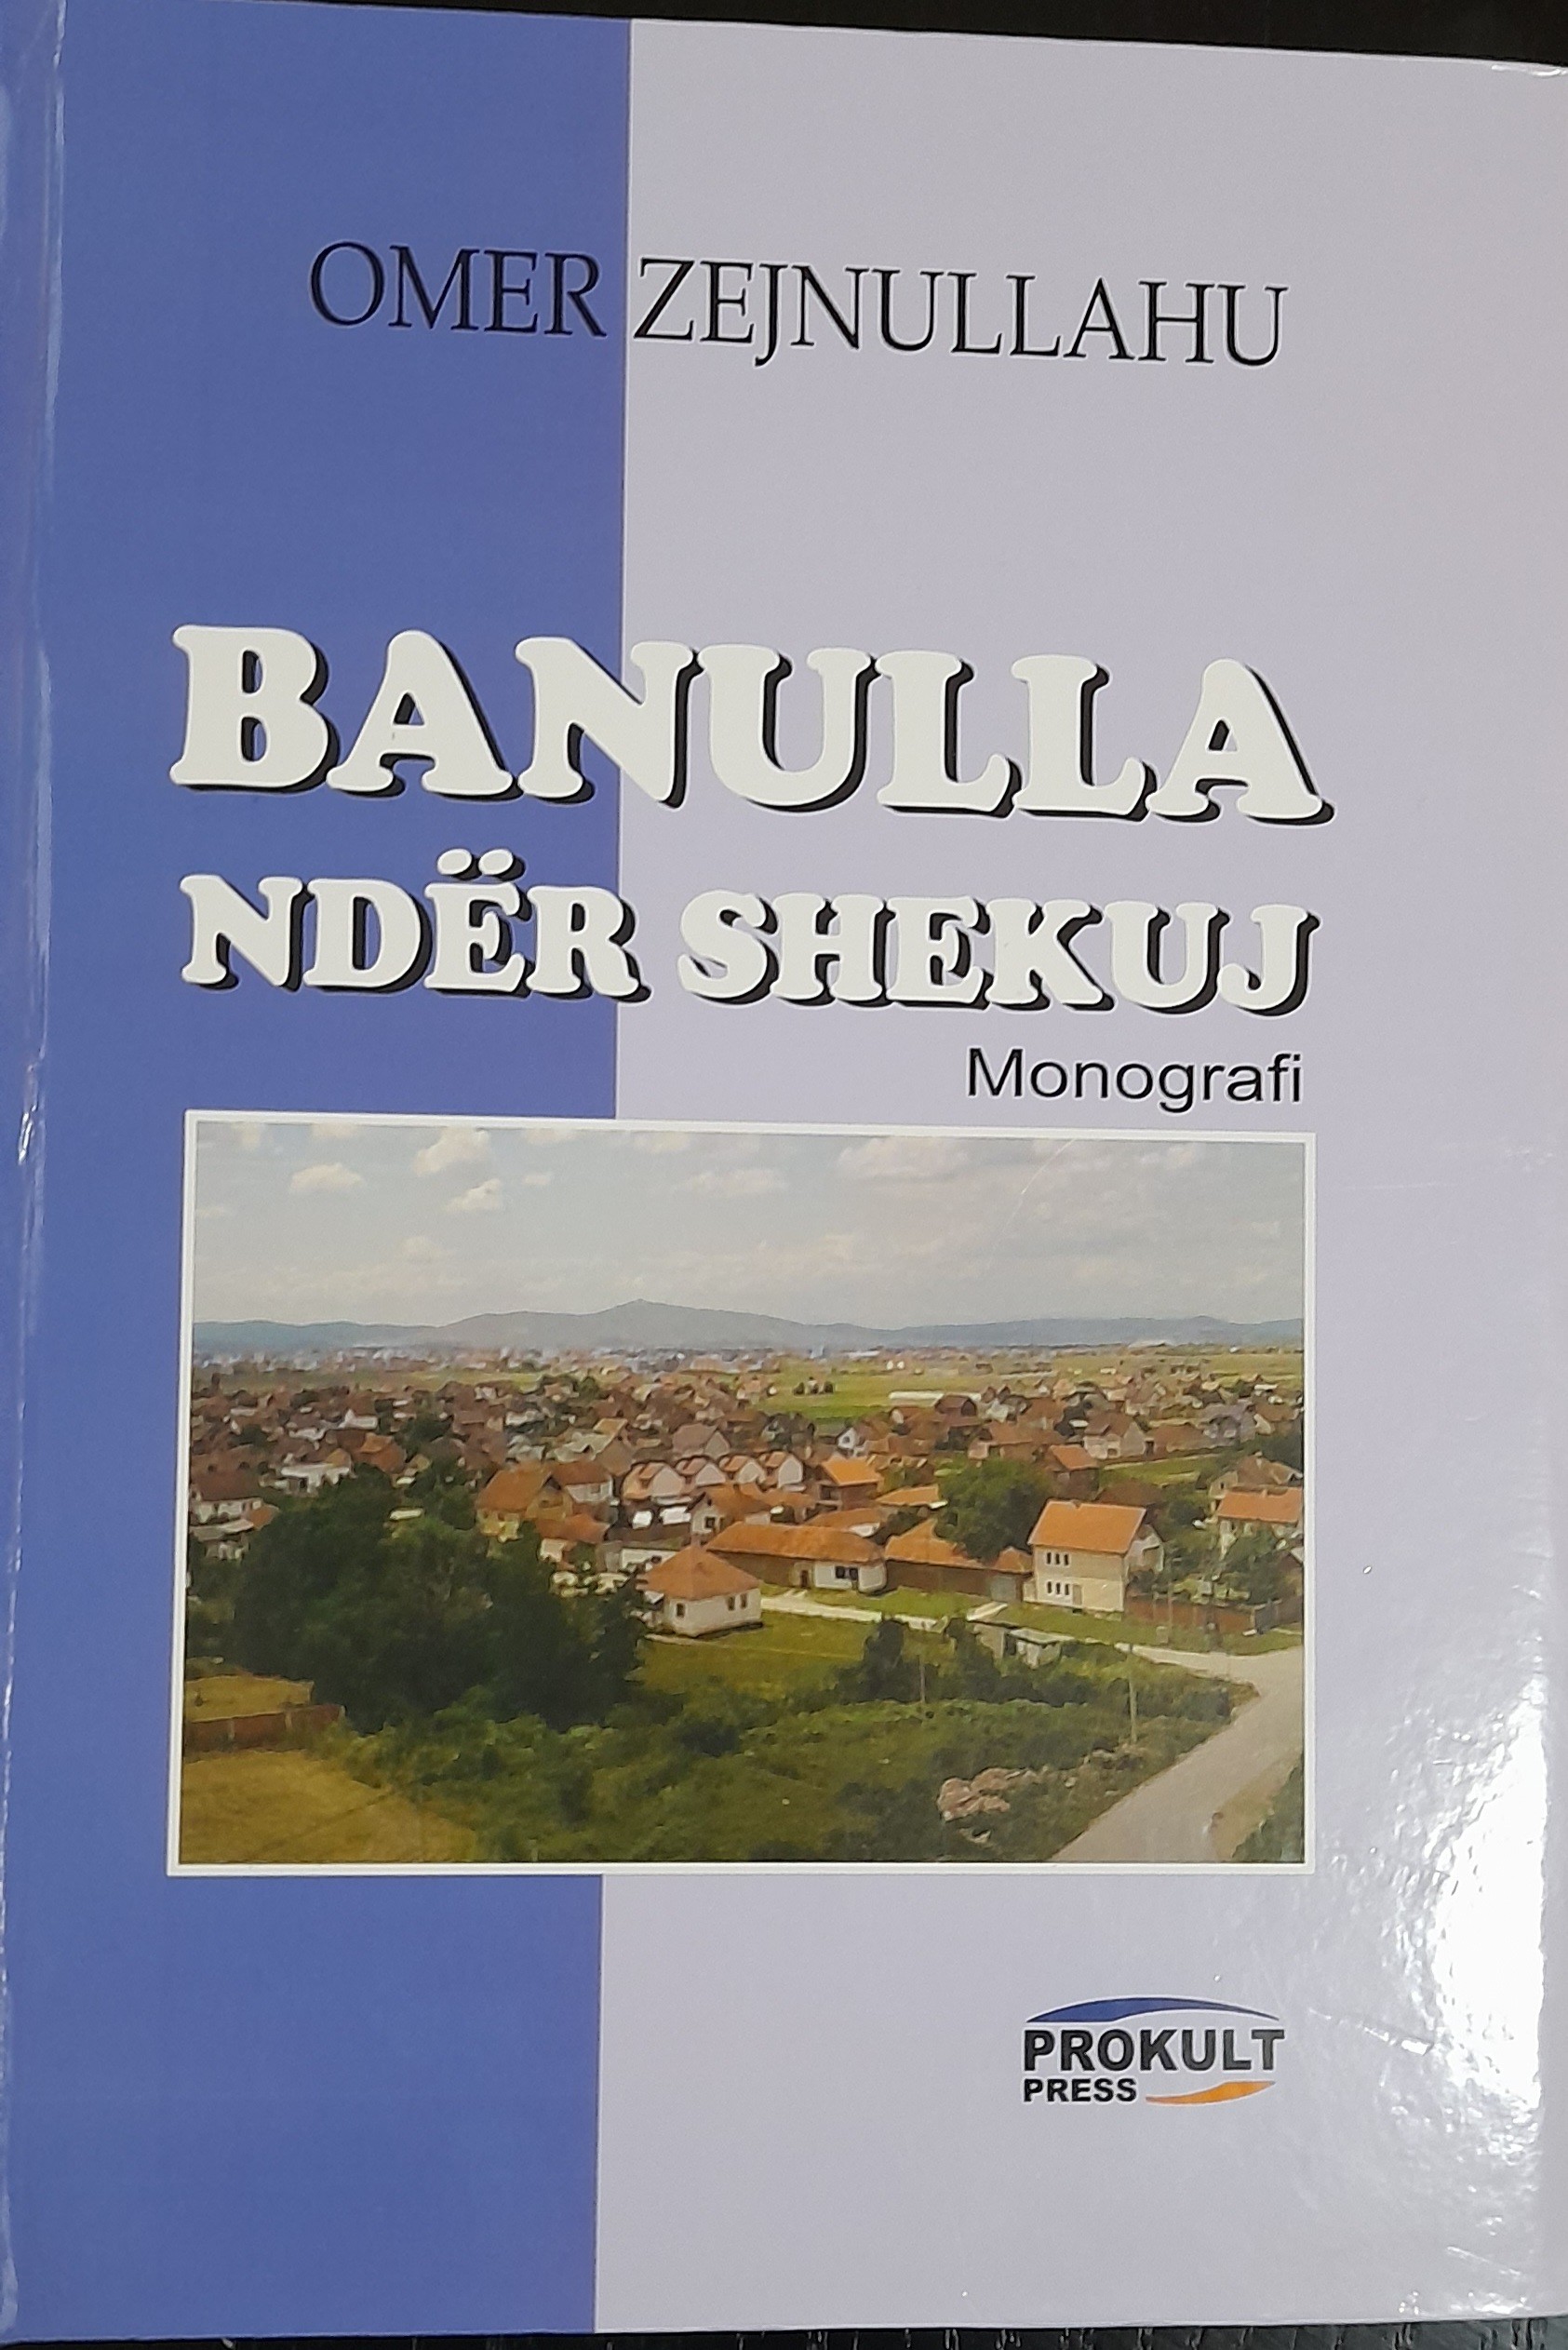 Botohet monografia "Banulla ndër shekuj"